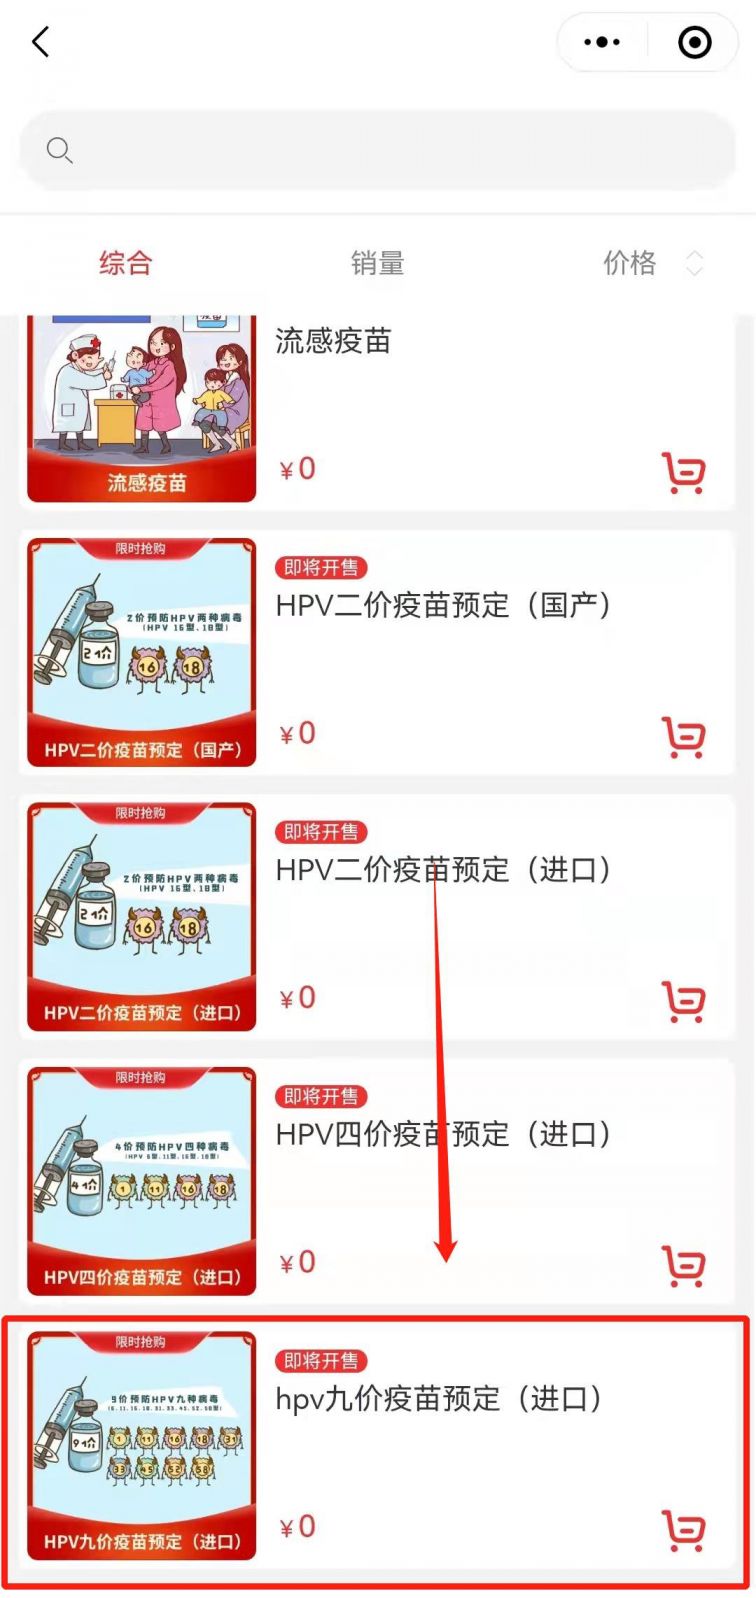 重庆科园社区卫生服务中心九价宫颈癌疫苗预约指南